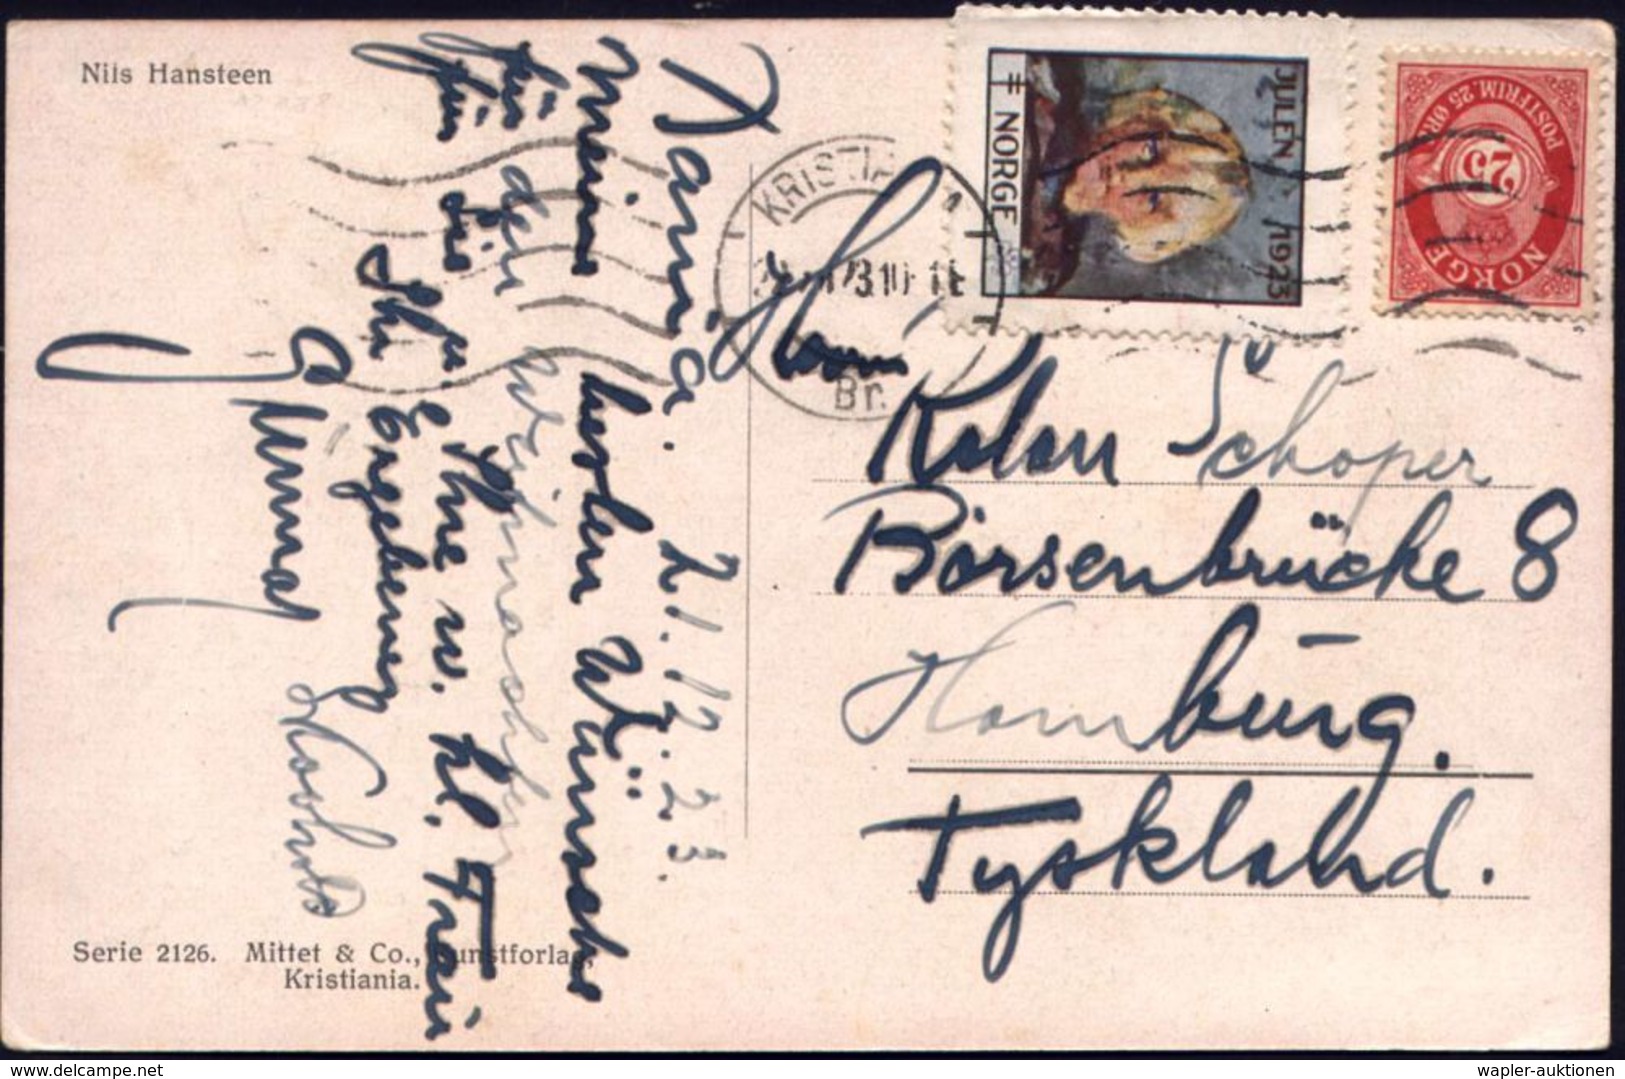 TUBERKULOSE / TBC-VORSORGE : NORWEGEN 1923 (22.12.) 25 Öre Freimarke + Tbc-Weihnachts-Spendenmarke "1923" (Kinderkopf) A - Malattie